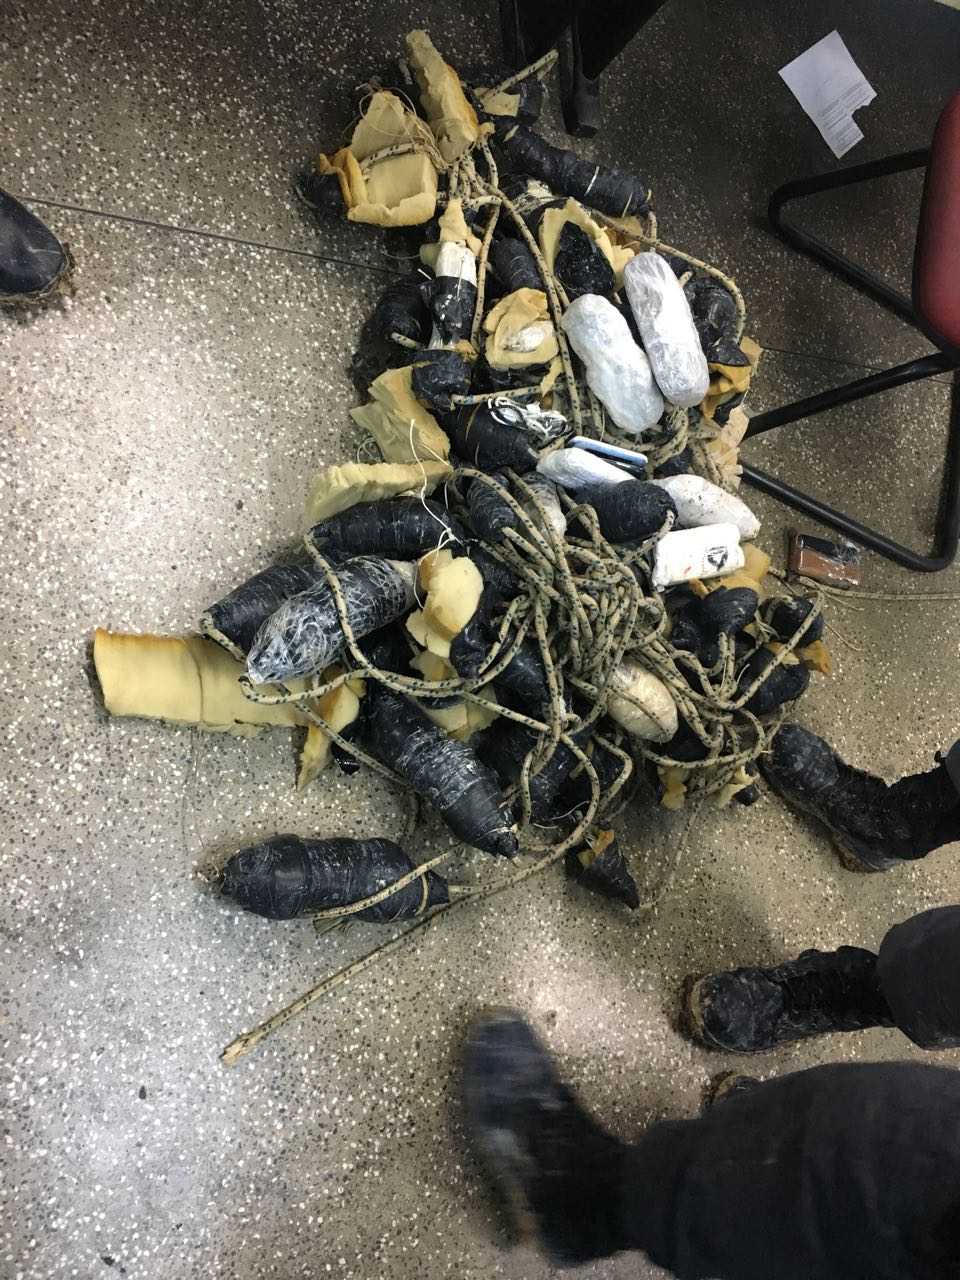 Polícia frustra tentativa de "pesca" de 3kg de drogas, 30 celulares e carregadores em presídio de Manaus - Imagem: Via Whatsapp